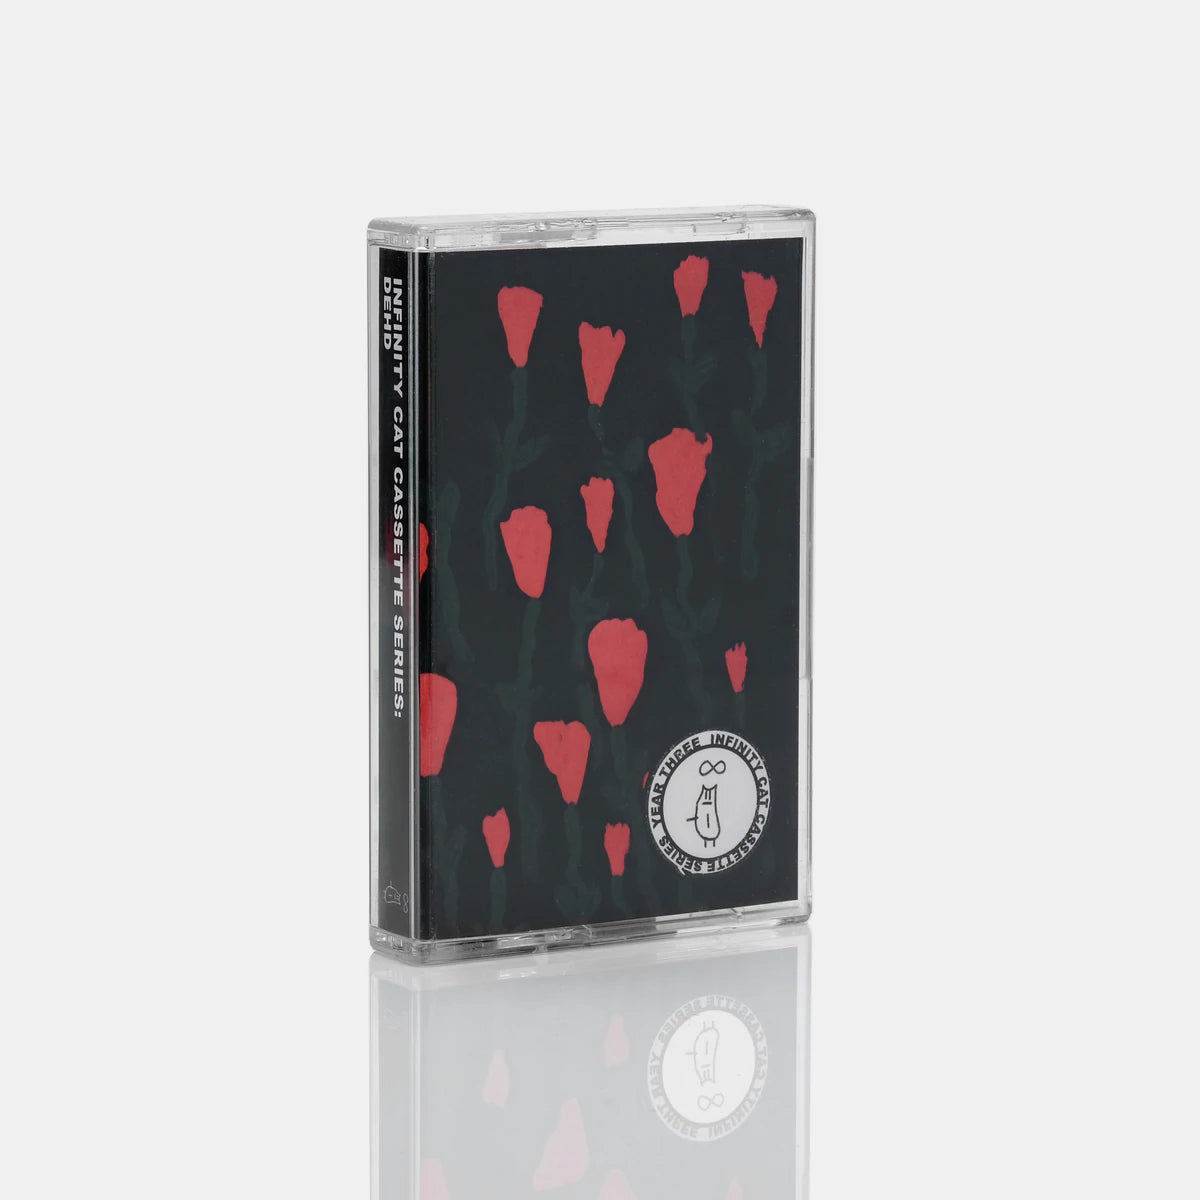 Dehd – Infinity Cat Cassette Series: Dehd Cassette (Pink)